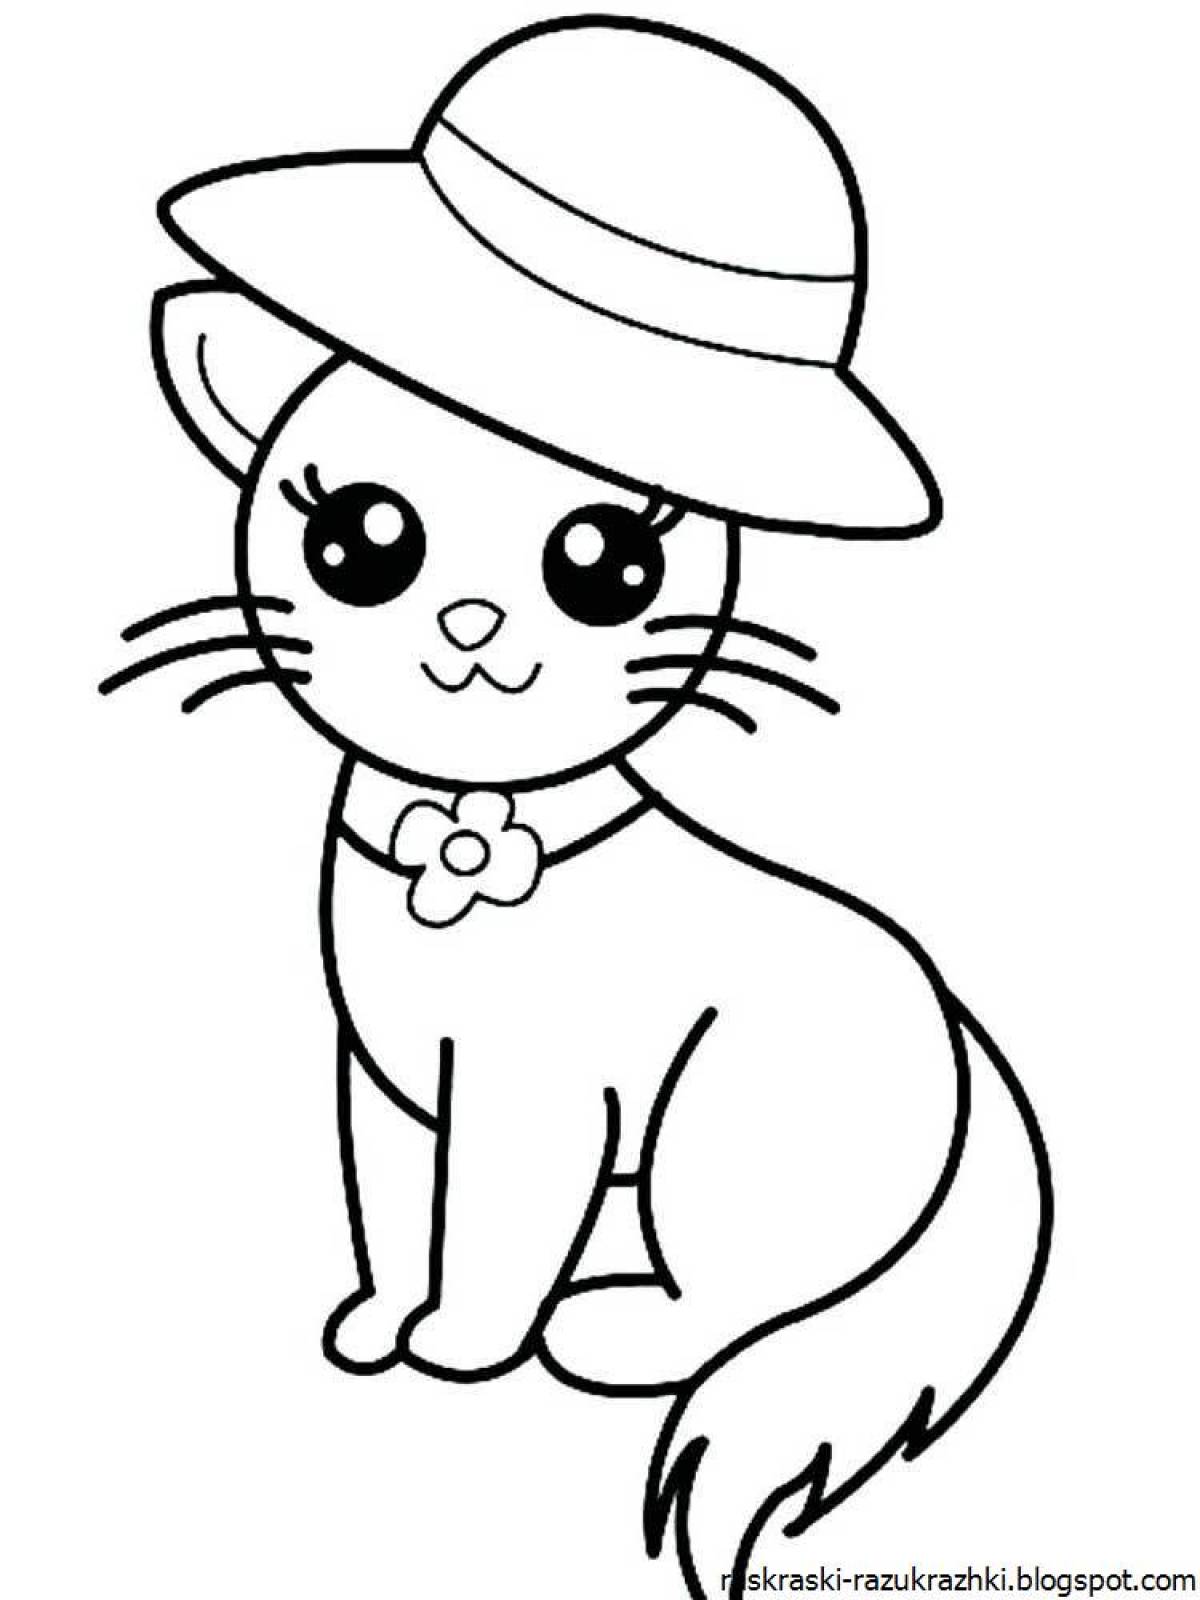 Раскраска Английская короткошерстная | Раскраски кошек. Рисунки кошек, картинки кошек